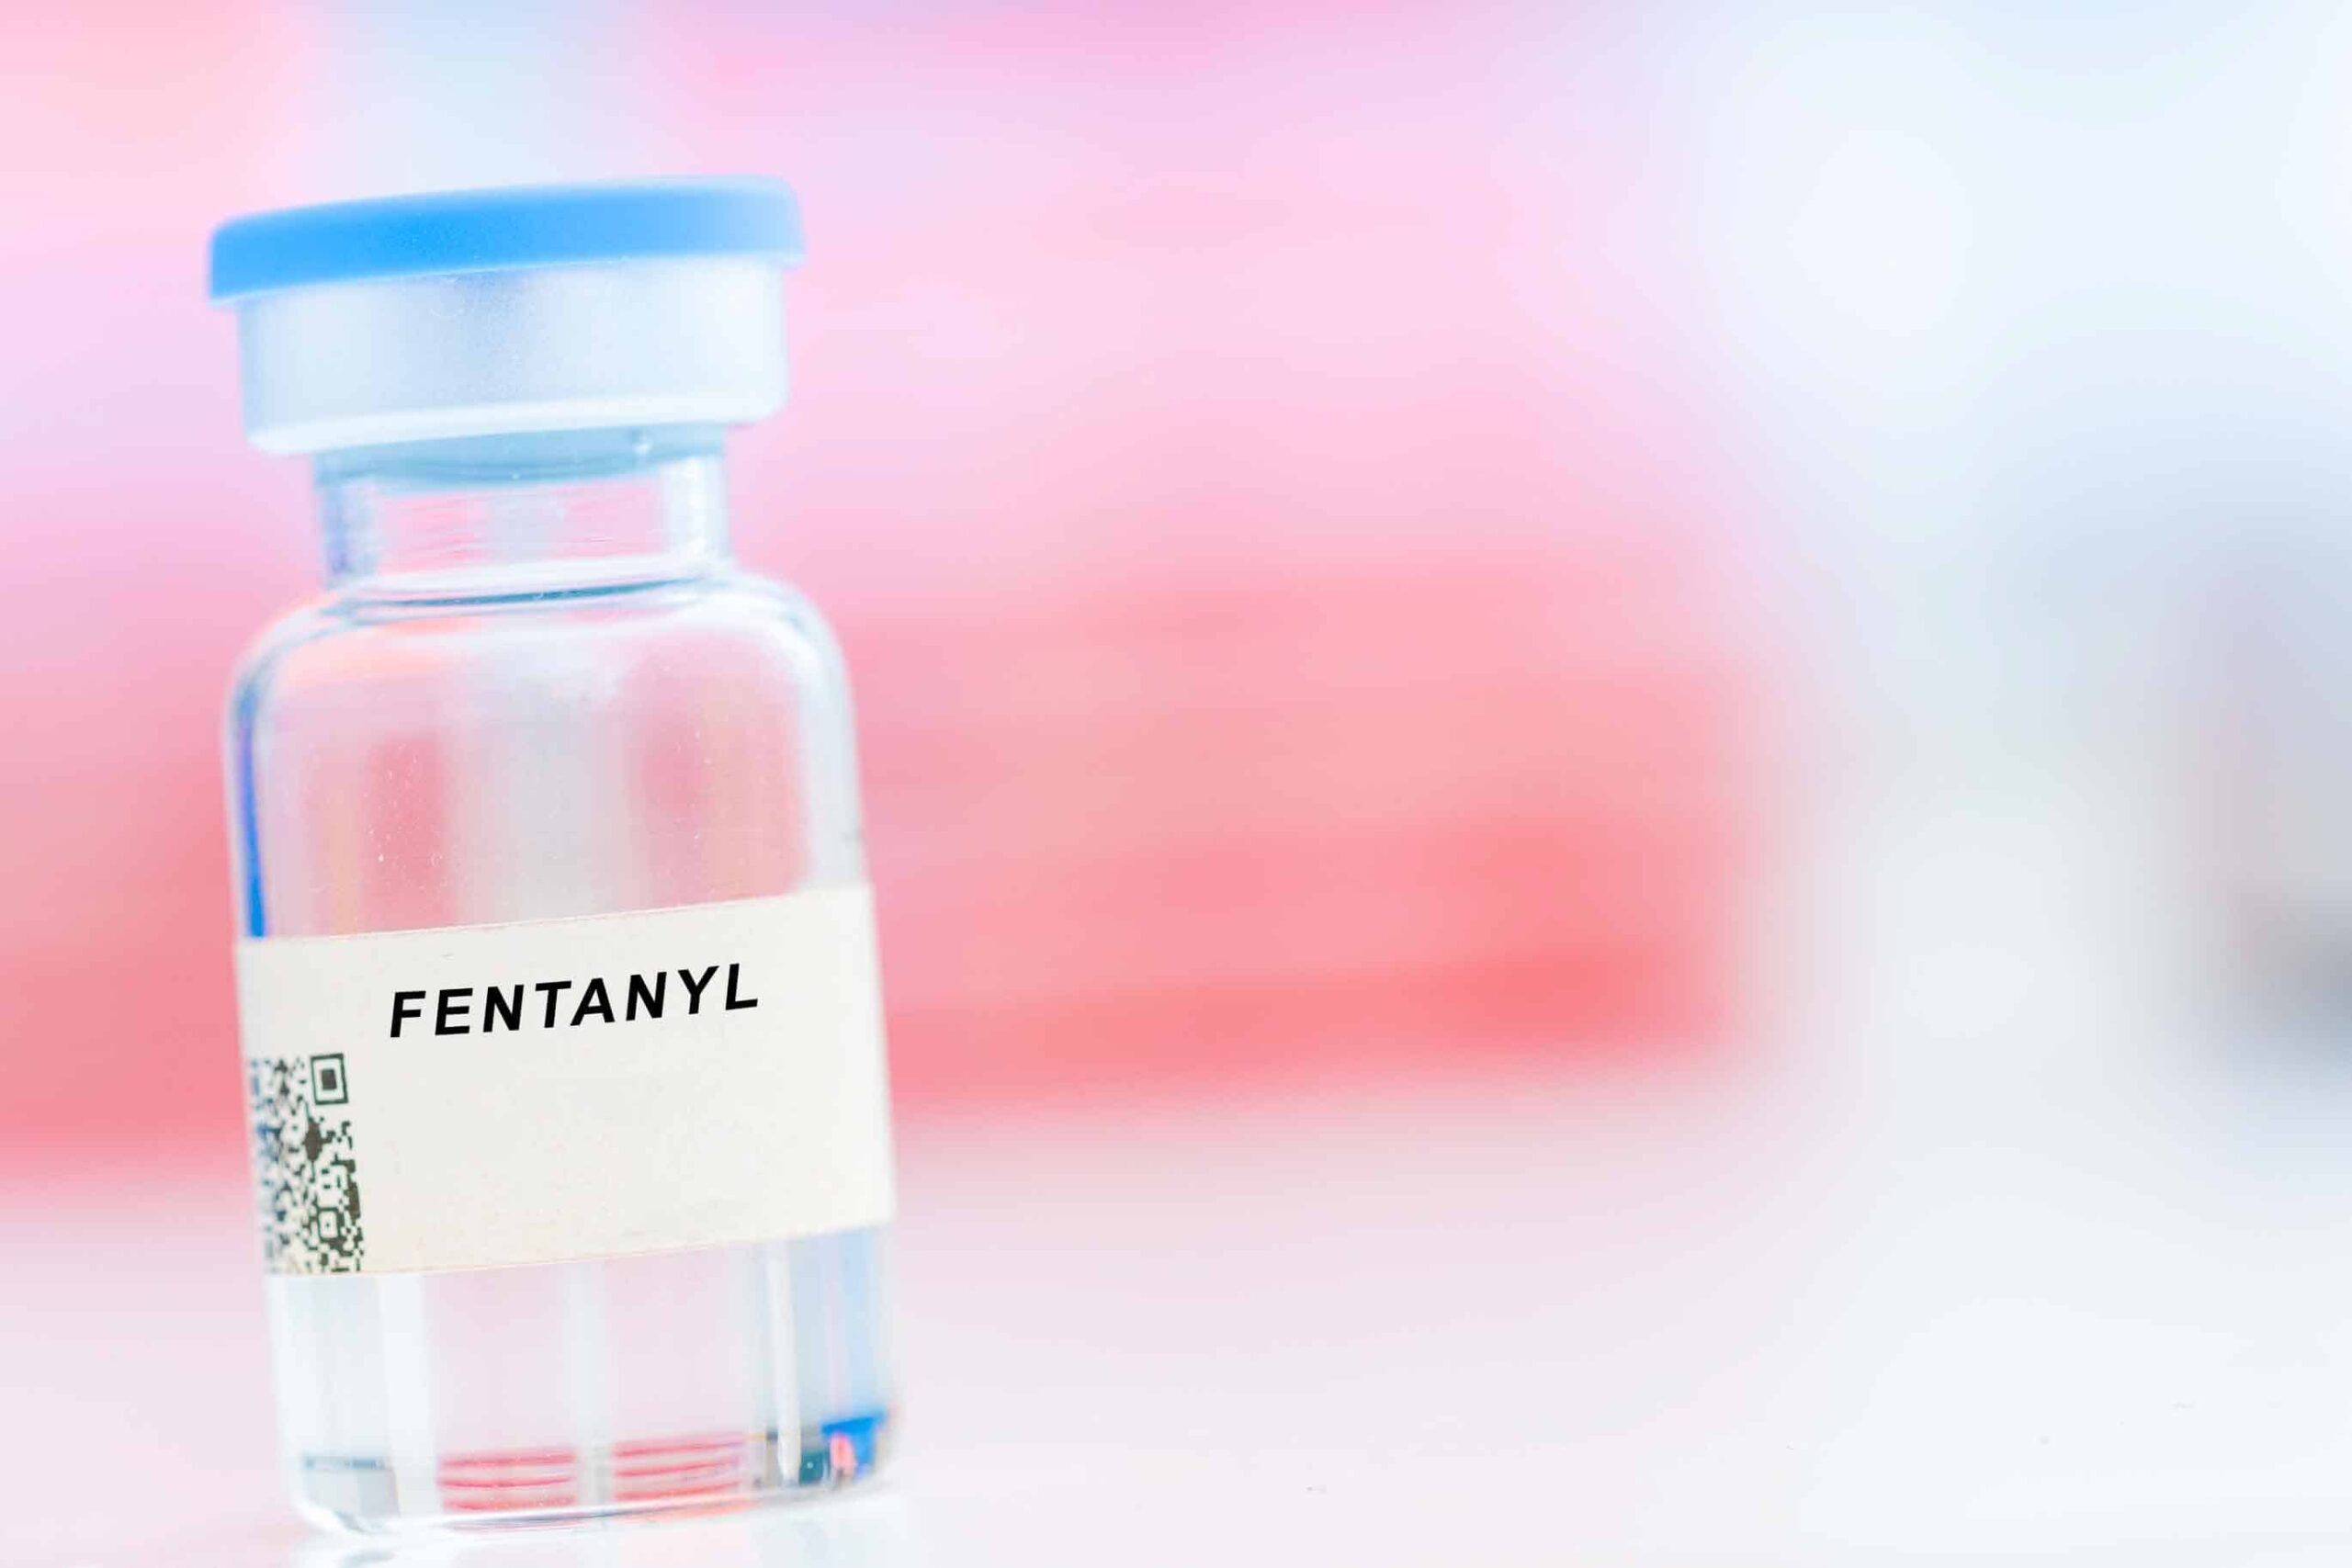 Las sobredosis de fentanilo experimentan un aumento dramático en los EE. UU., según un informe